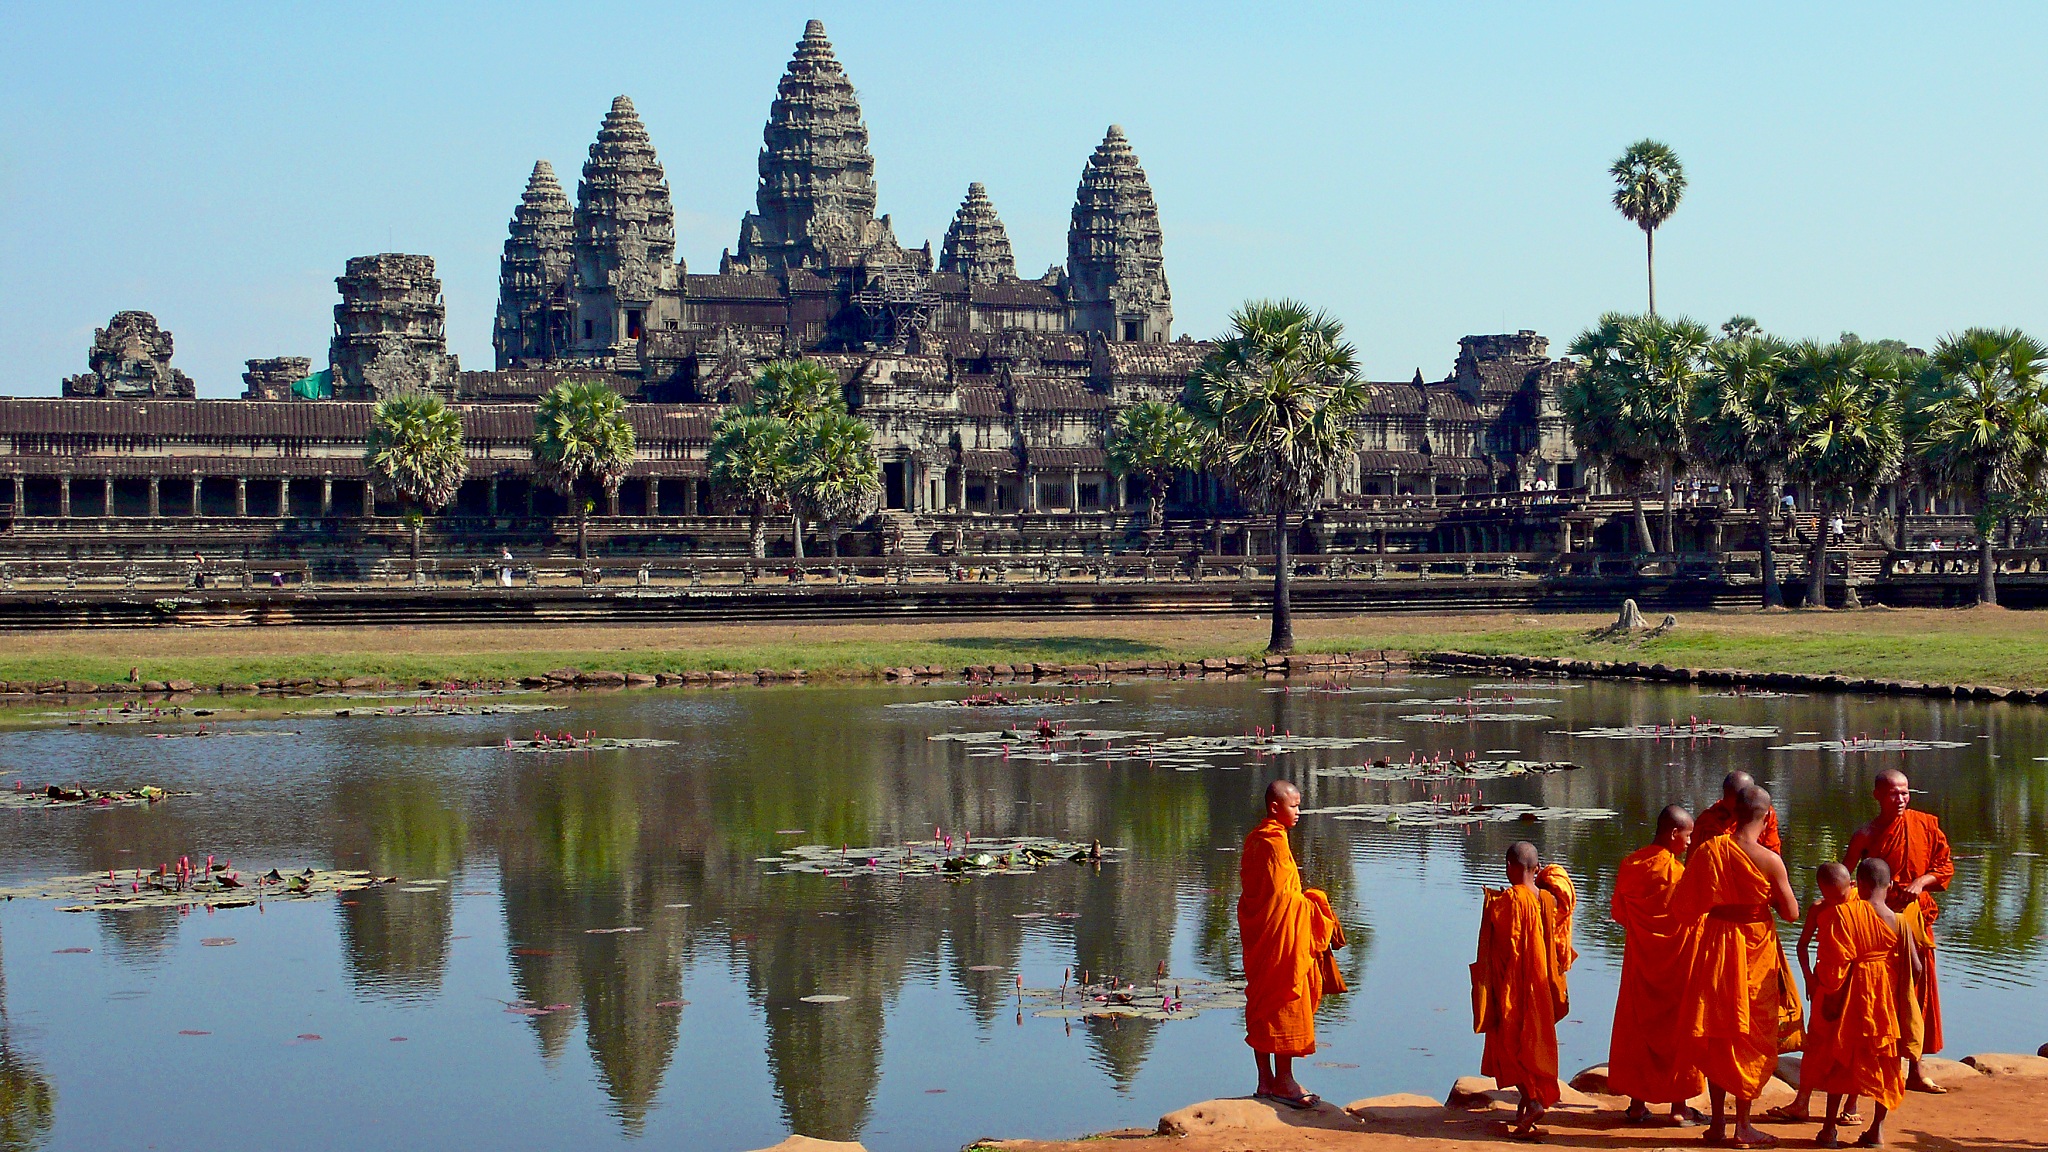 Angkor Thom - Kinh đô vĩ đại cuối cùng của đế chế Angkor